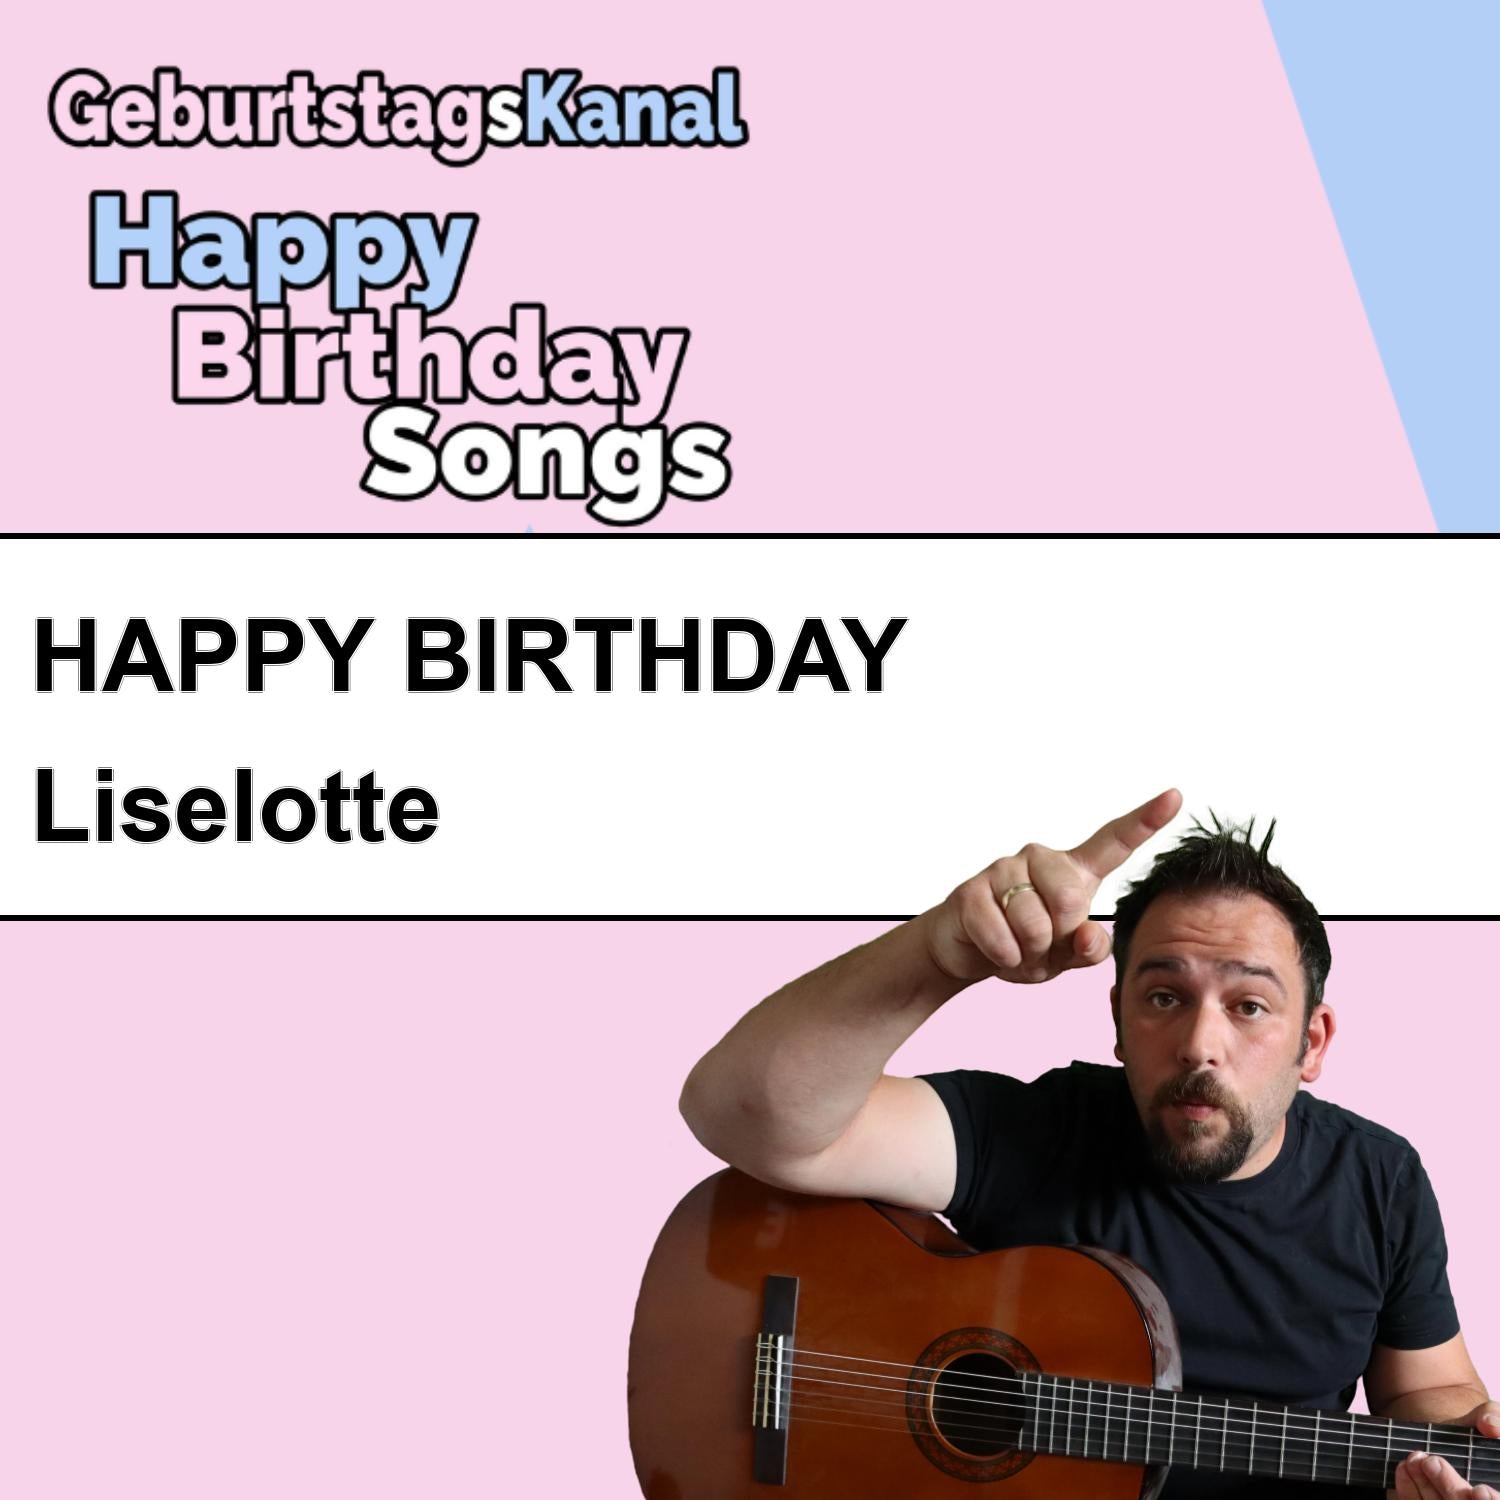 Produktbild Happy Birthday to you Liselotte mit Wunschgrußbotschaft